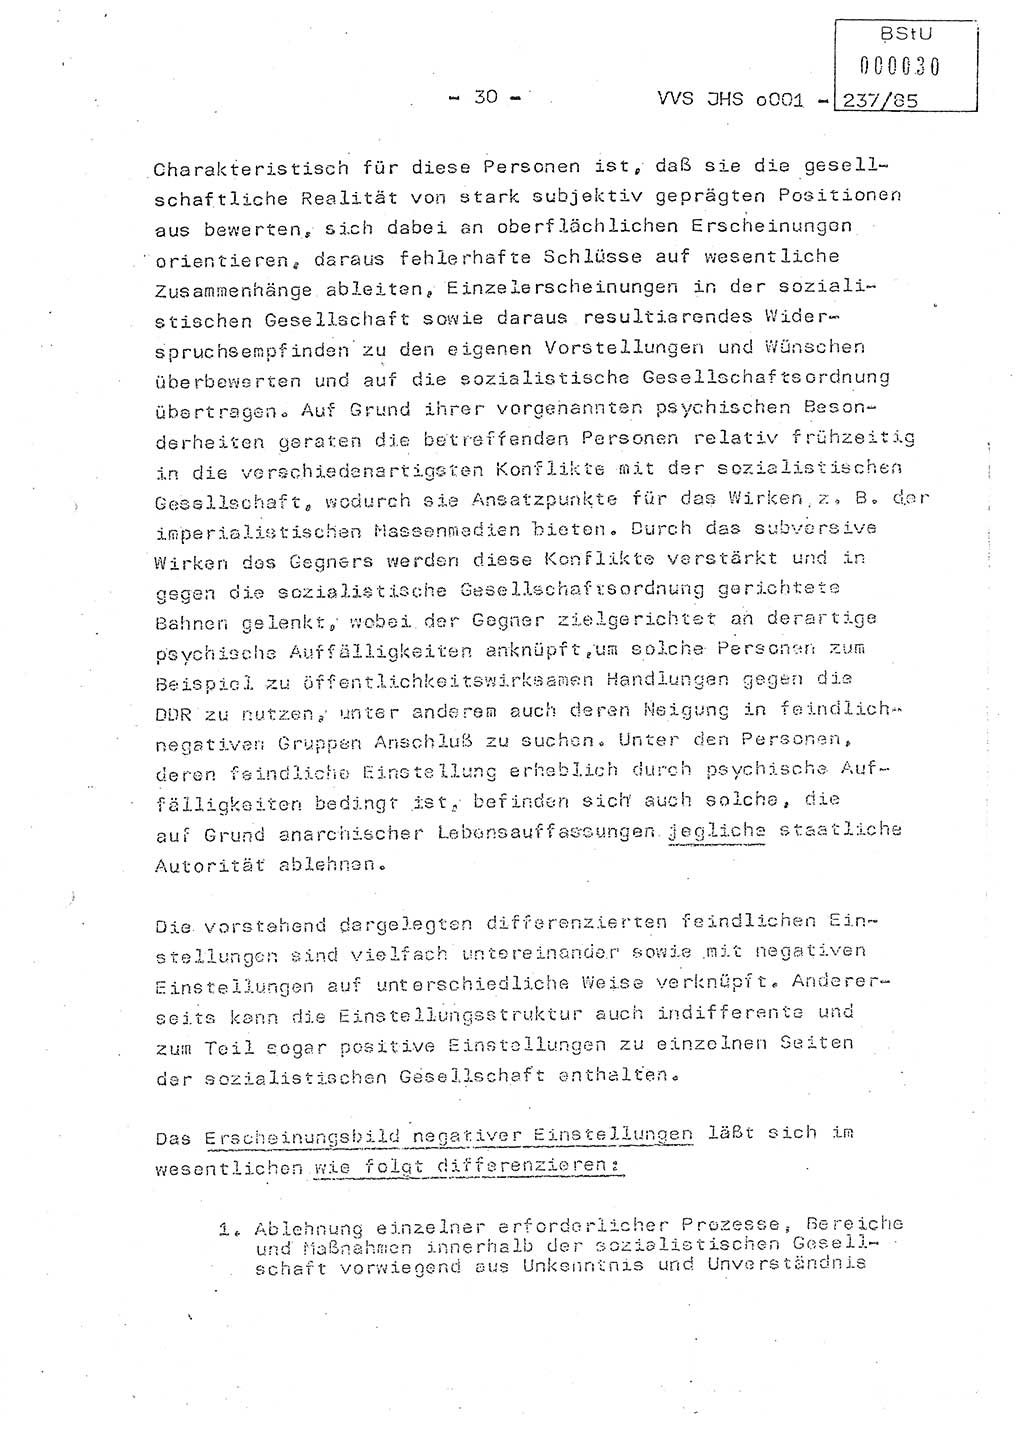 Dissertation Oberstleutnant Peter Jakulski (JHS), Oberstleutnat Christian Rudolph (HA Ⅸ), Major Horst Böttger (ZMD), Major Wolfgang Grüneberg (JHS), Major Albert Meutsch (JHS), Ministerium für Staatssicherheit (MfS) [Deutsche Demokratische Republik (DDR)], Juristische Hochschule (JHS), Vertrauliche Verschlußsache (VVS) o001-237/85, Potsdam 1985, Seite 30 (Diss. MfS DDR JHS VVS o001-237/85 1985, S. 30)